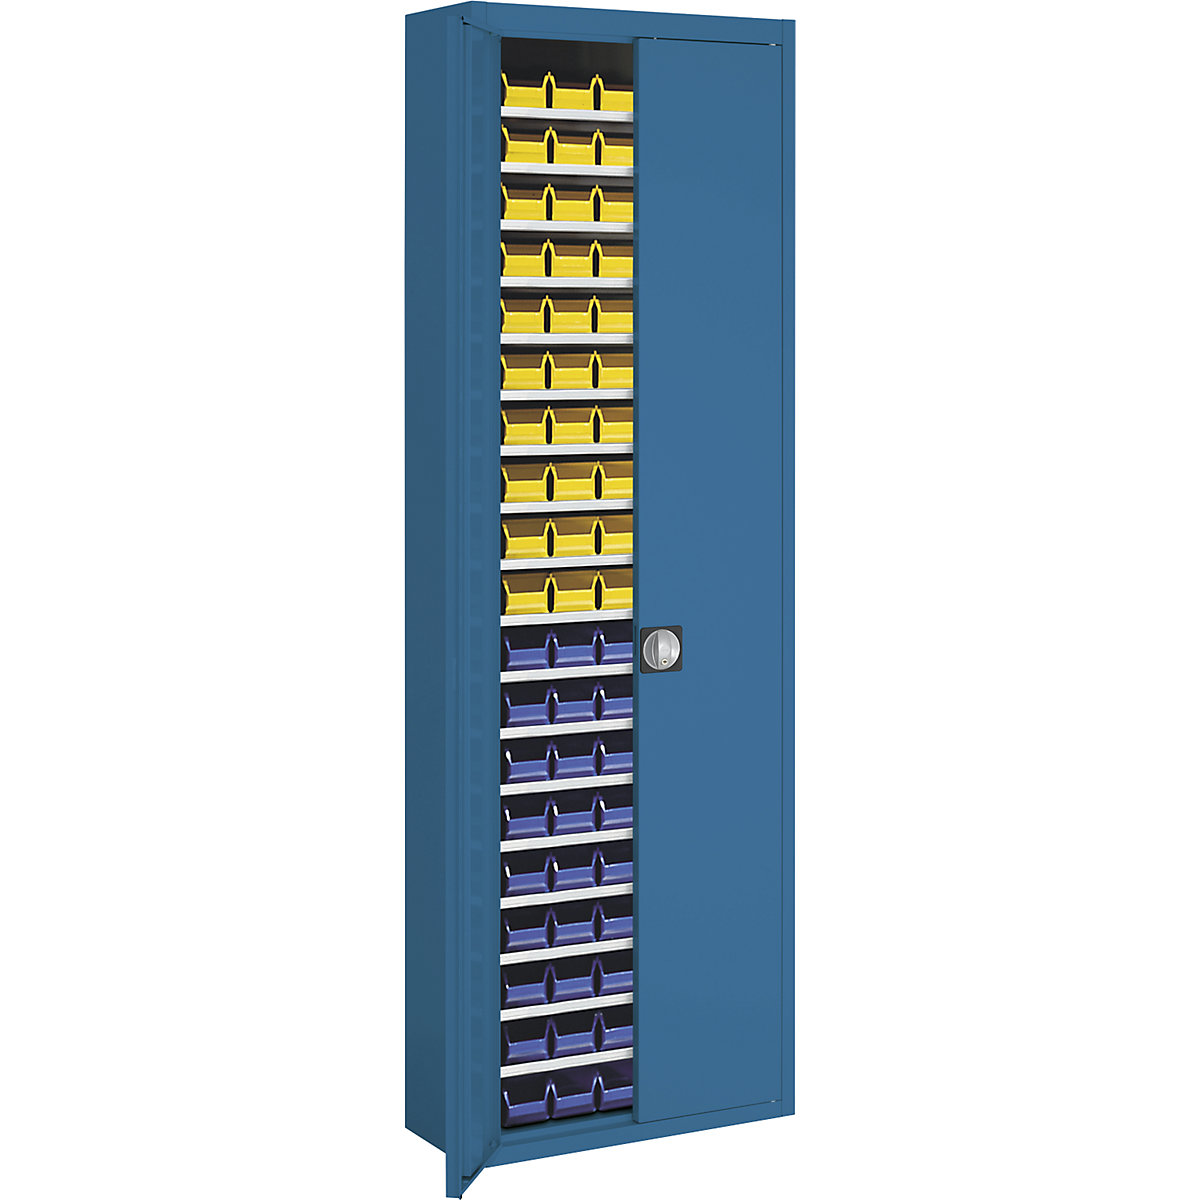 Skladová skříň s přepravkami s viditelným obsahem – mauser, v x š x h 2150 x 680 x 280 mm, jednobarevné, modrá, 114 přepravek-6